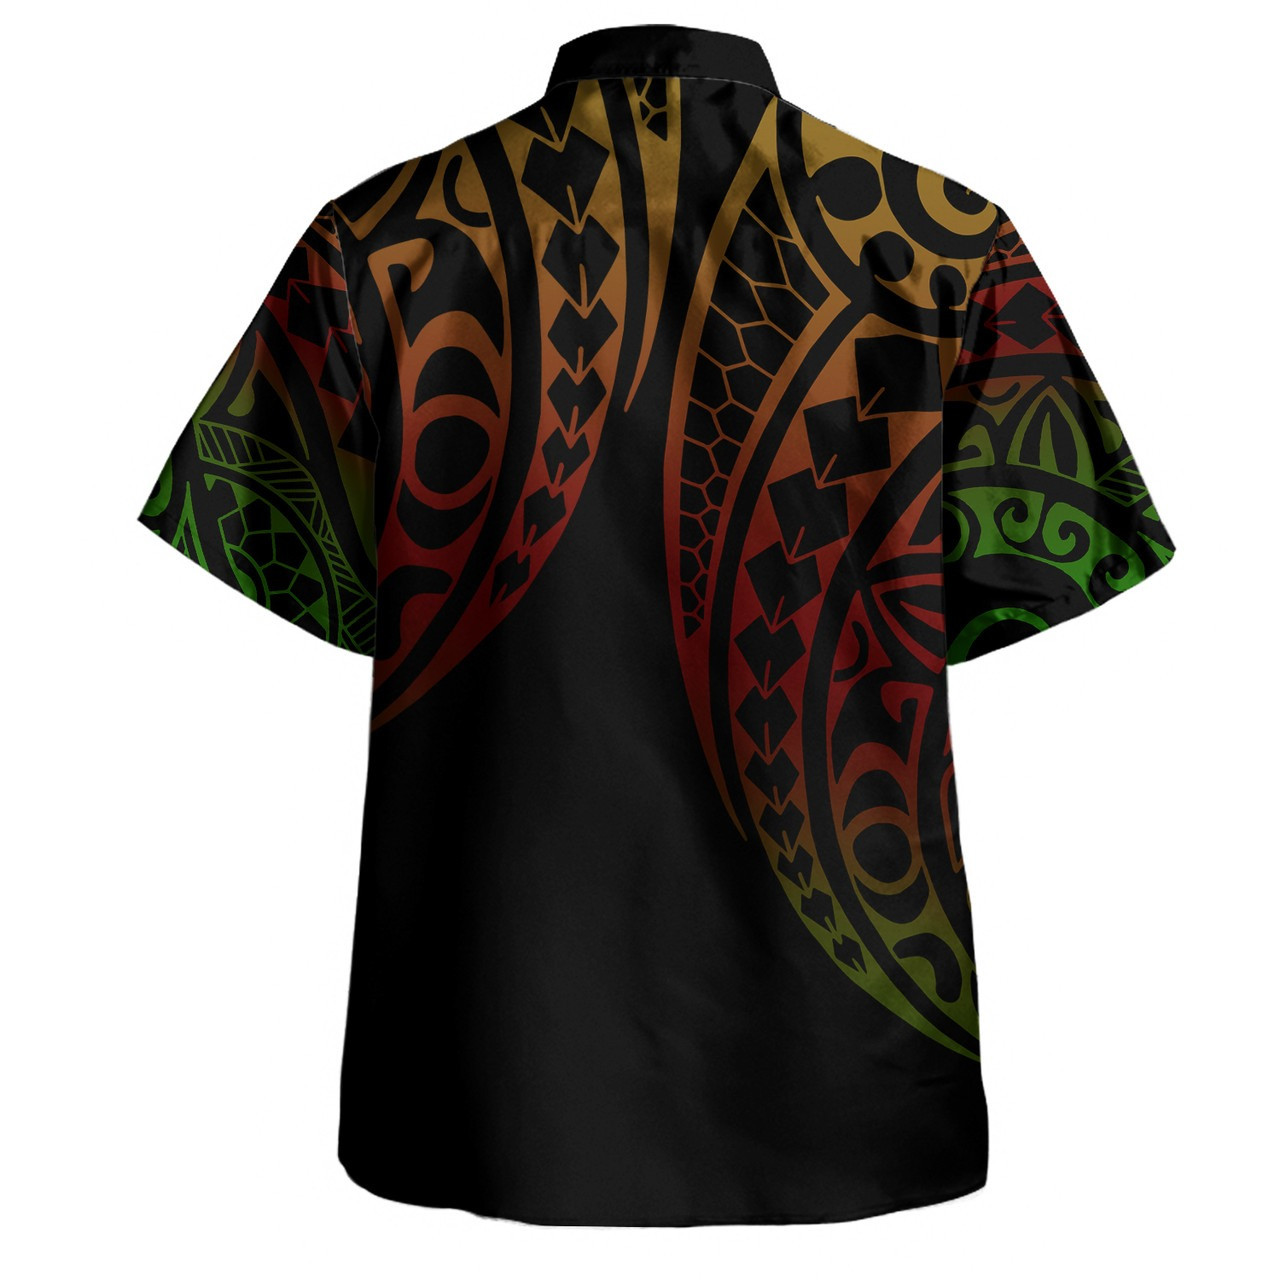 Guam Combo Puletasi And Shirt Kakau Style Reggae